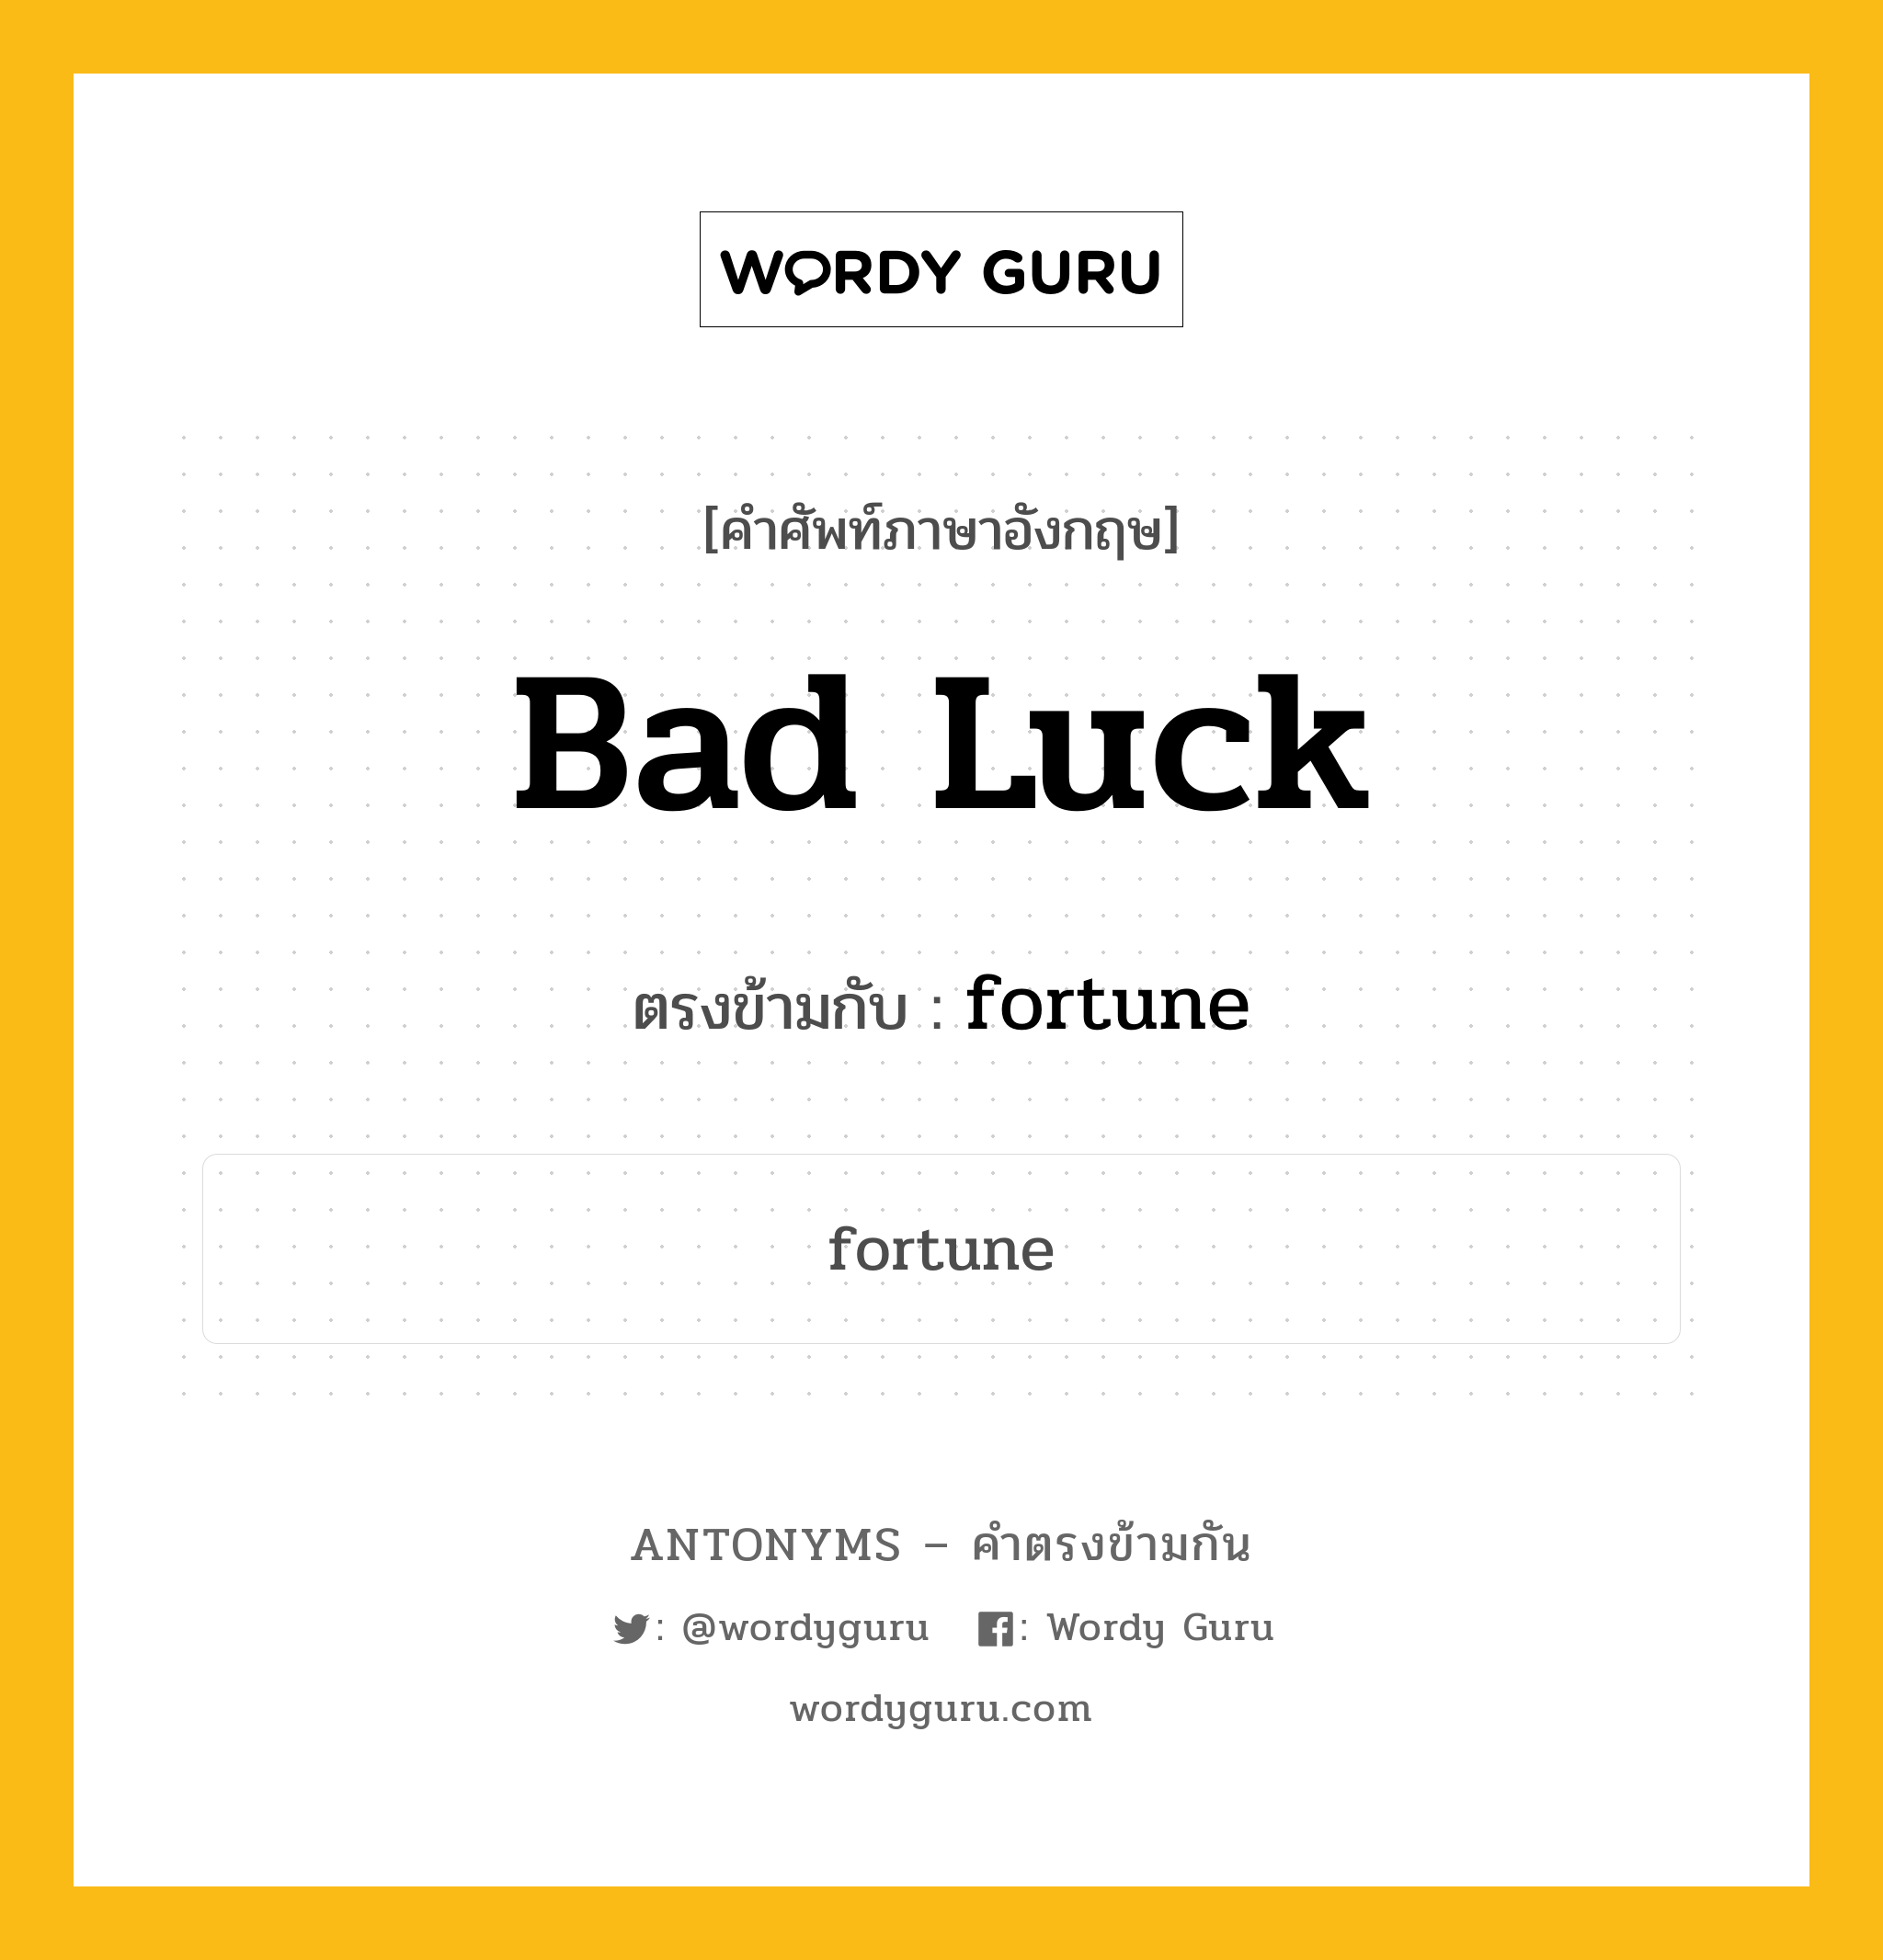 bad luck เป็นคำตรงข้ามกับคำไหนบ้าง?, คำศัพท์ภาษาอังกฤษ bad luck ตรงข้ามกับ fortune หมวด fortune